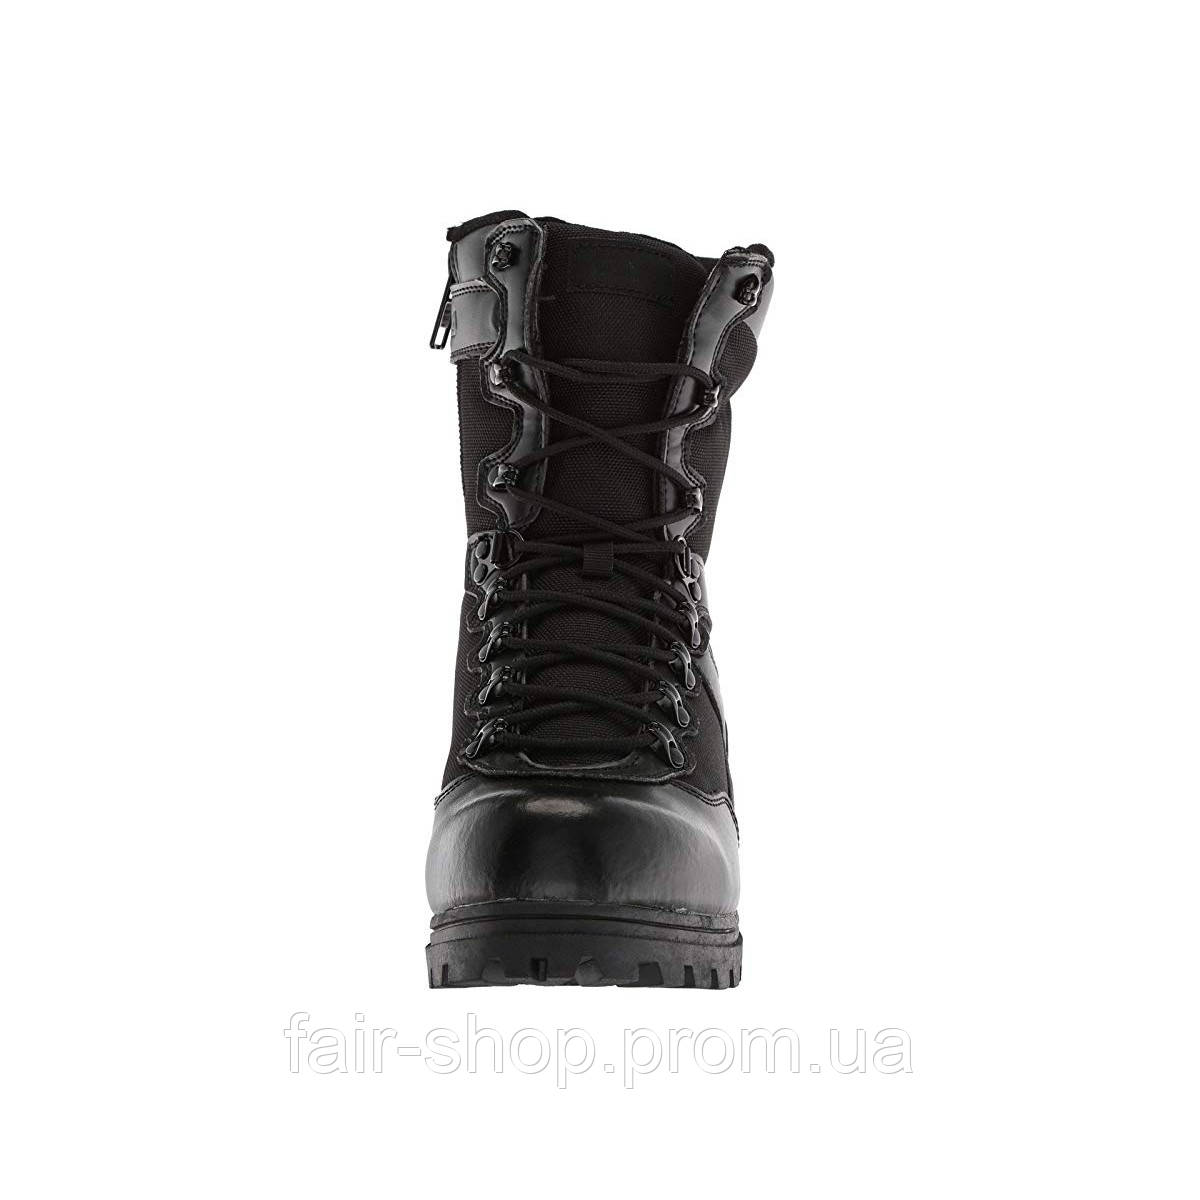 Ботинкии Fila Stormer Work Boots Black/Black/Black - Оригинал — в Категории  "Ботинки Мужские" на Bigl.ua (1083940357)